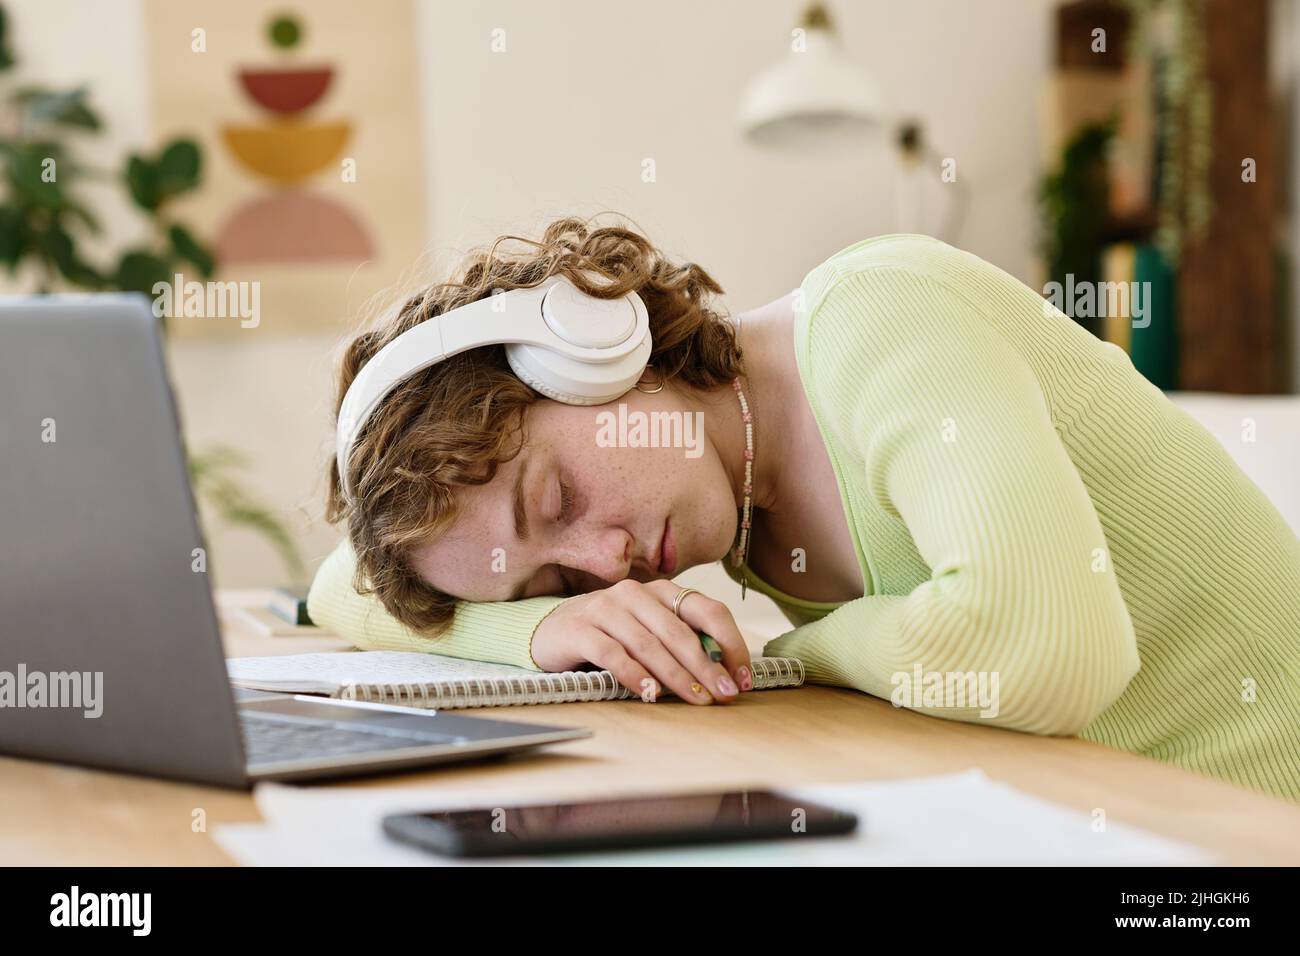 Junge, müde Studentin mit Kopfhörern und Casualwear, die den Kopf auf dem Copybook hält, während sie vor dem Laptop am Schreibtisch lappt Stockfoto